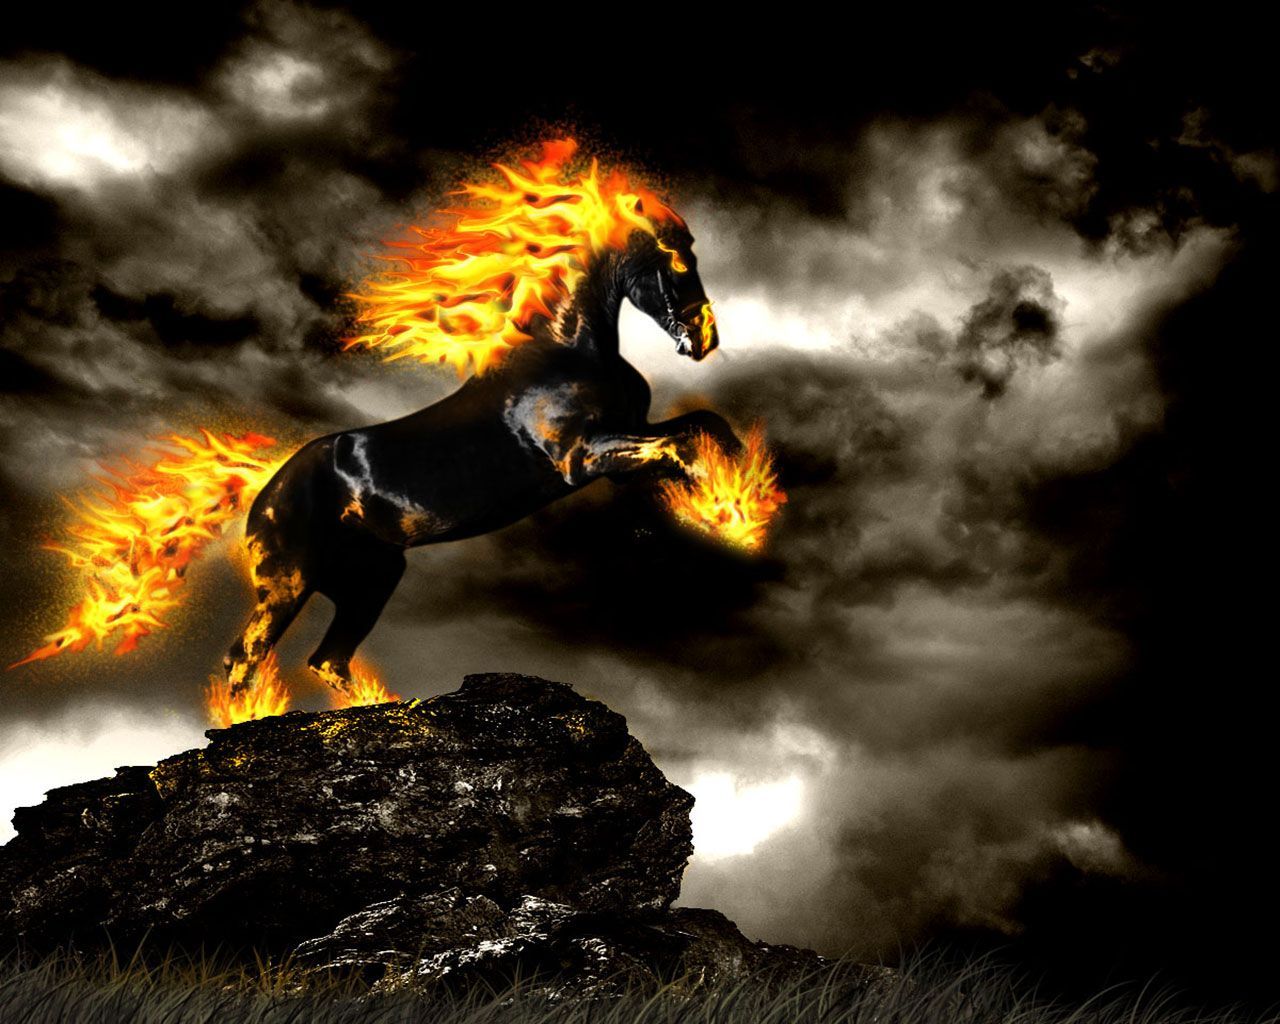 Horses Fire Free Wallpaper. Horse wallpaper, Fire horse, Fantasy horses